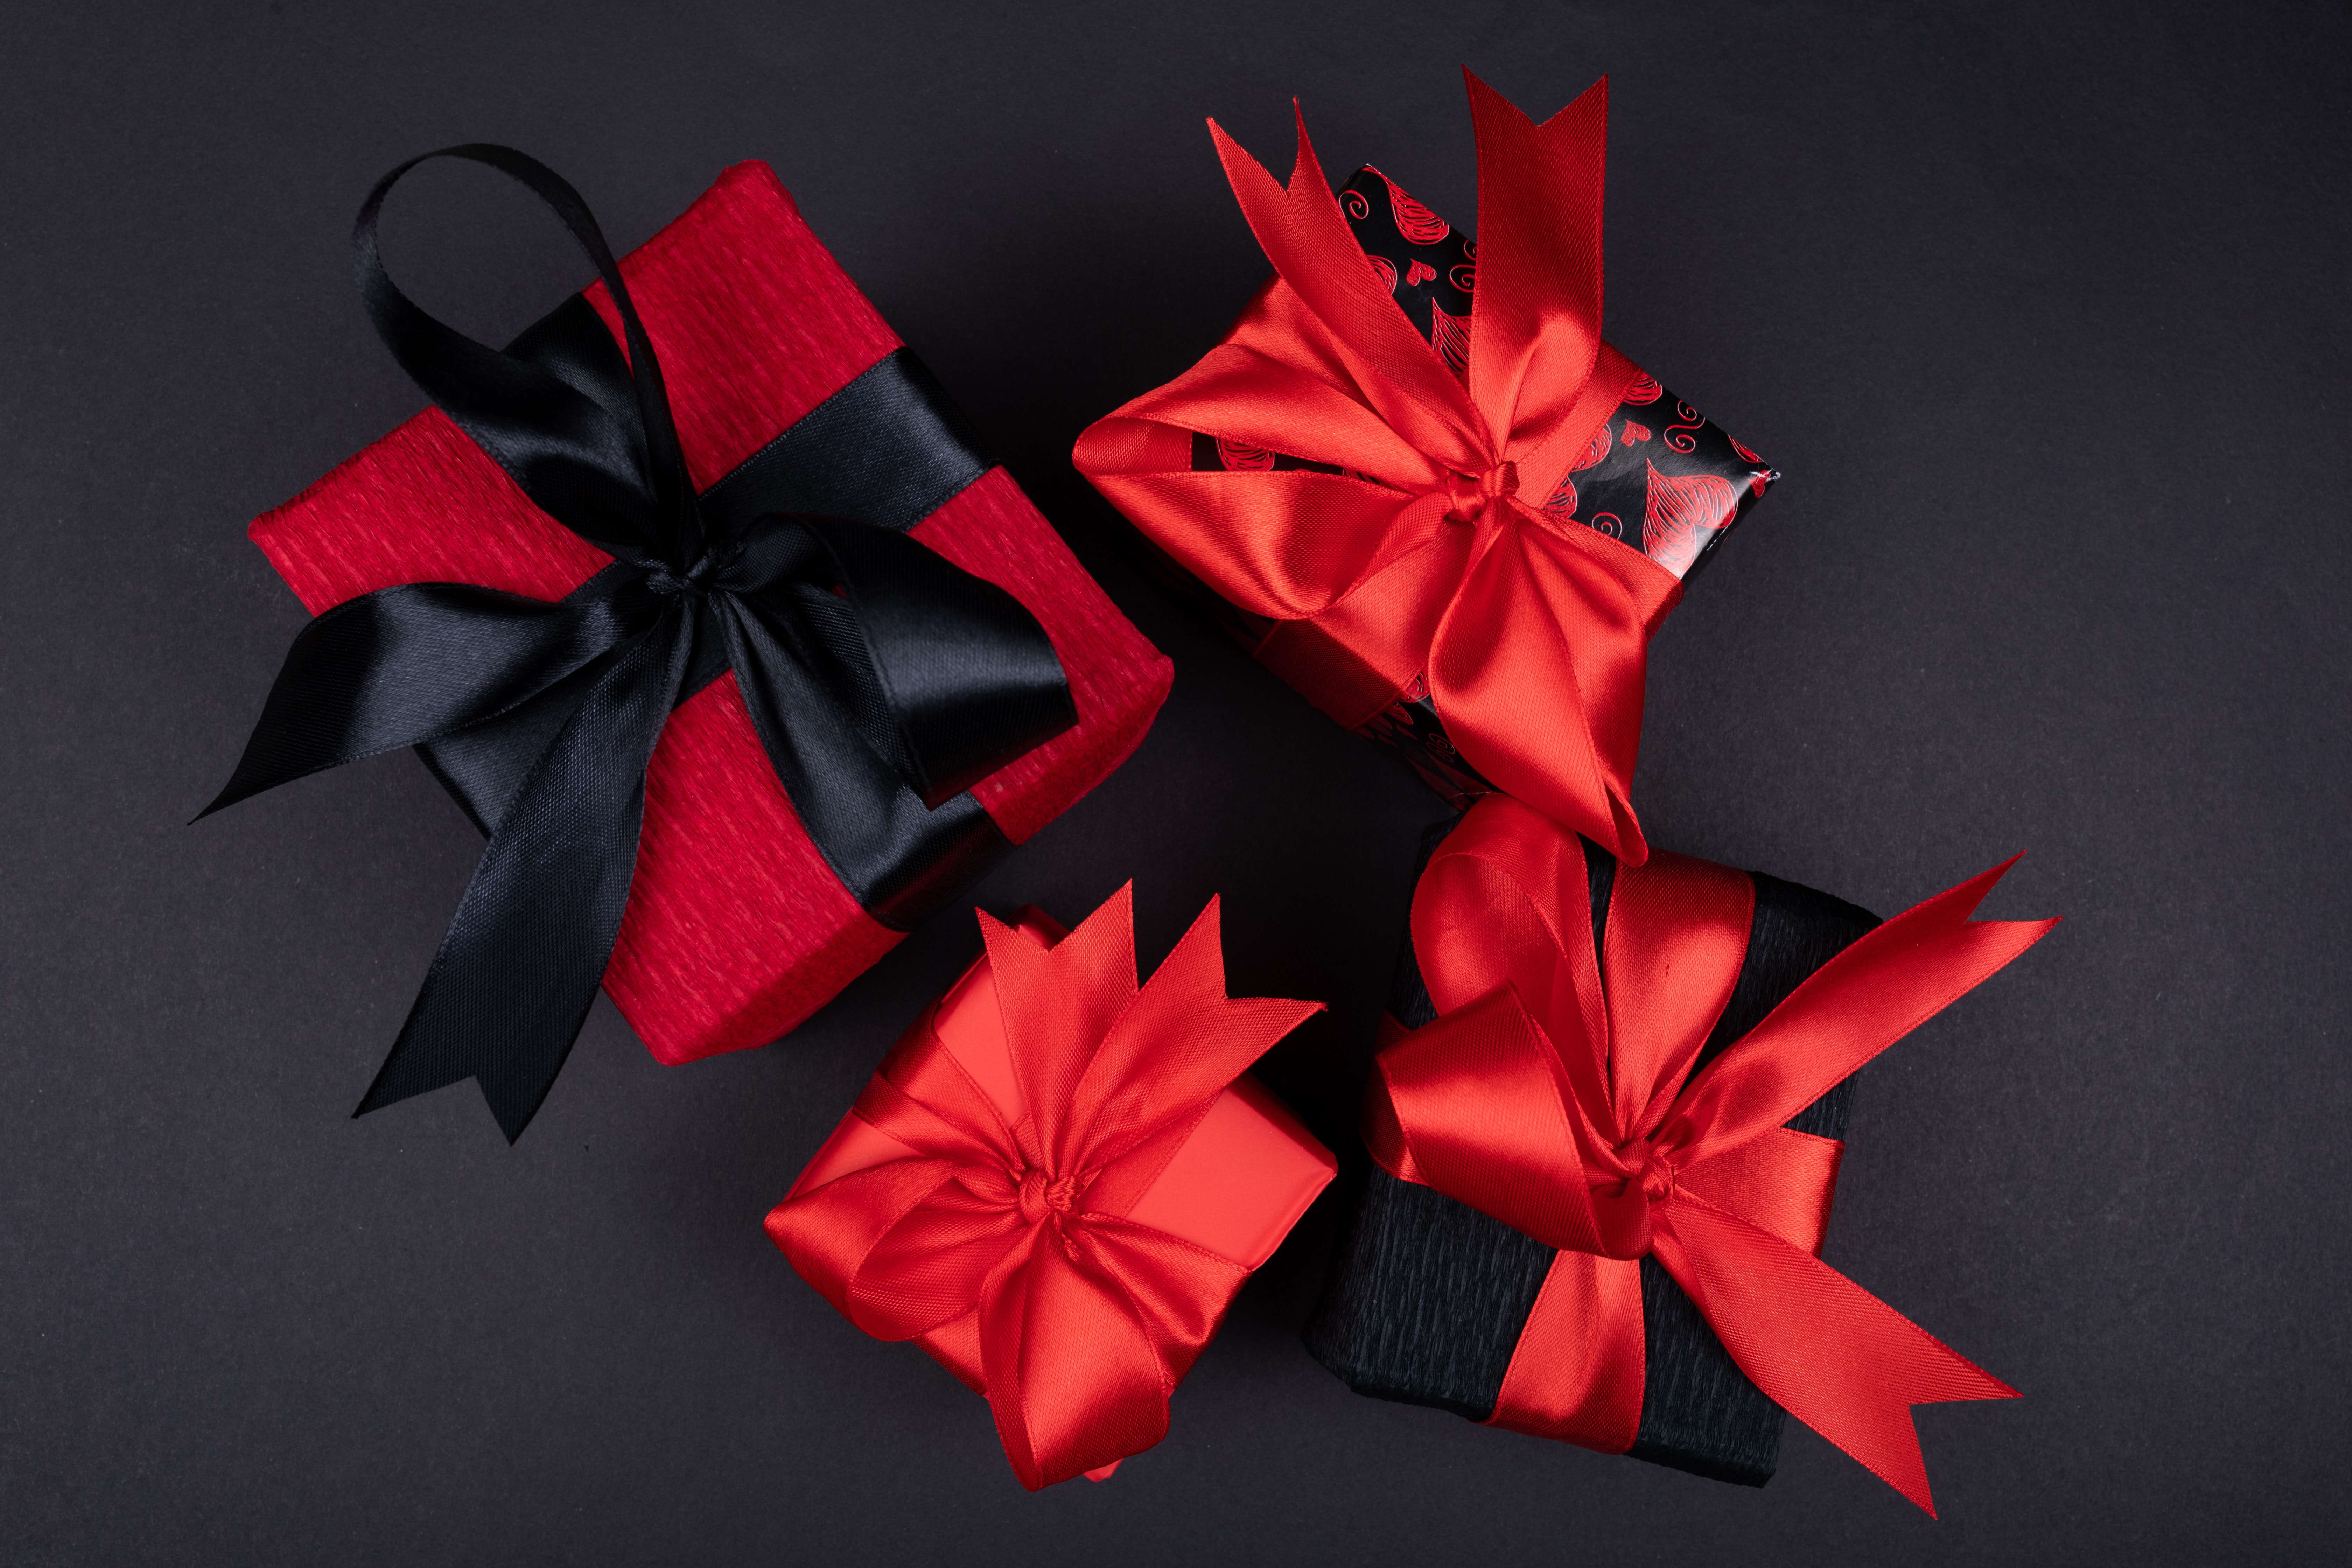 black, gifts, holidays, red, presents, ribbons, ribbon, boxes